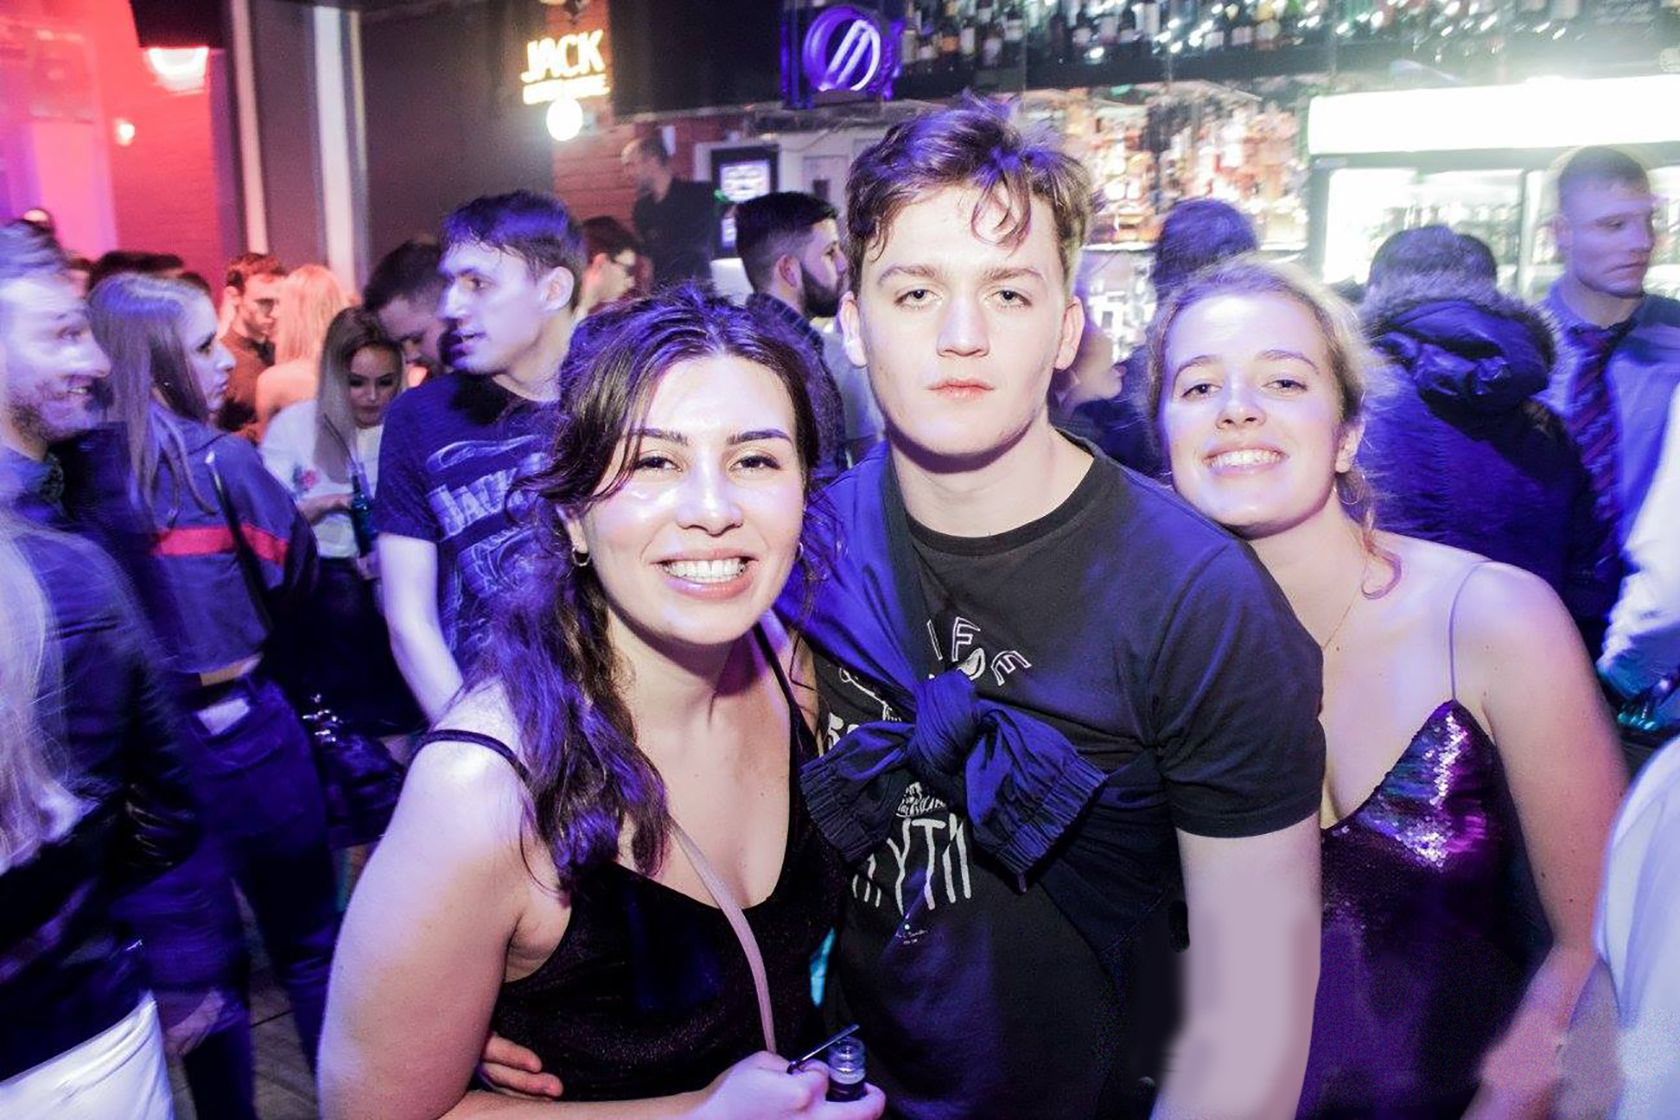 Three people posing in a nightclub.